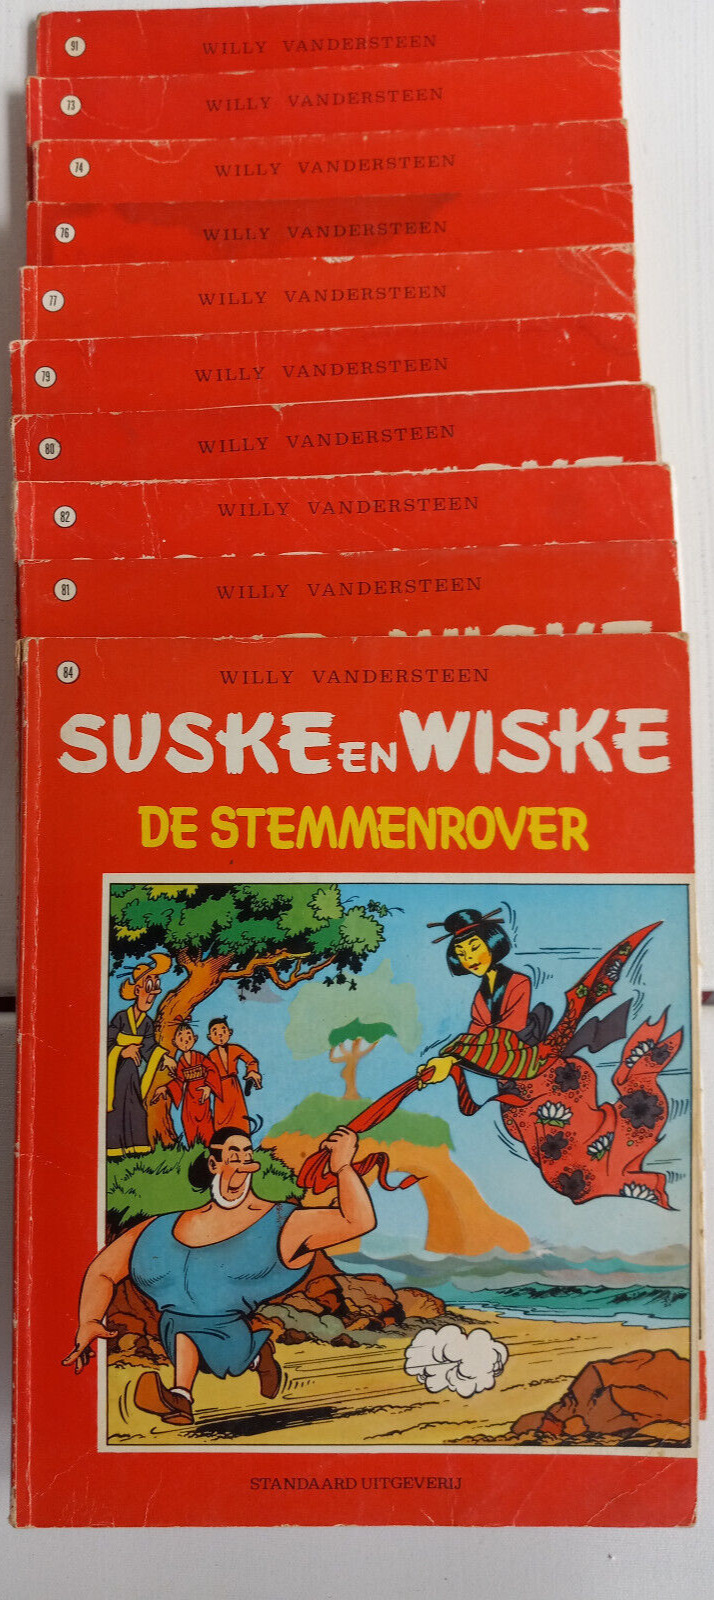 Ten(10) Suske en Wiske  Dutch Comic Books by Willy Vandersteen